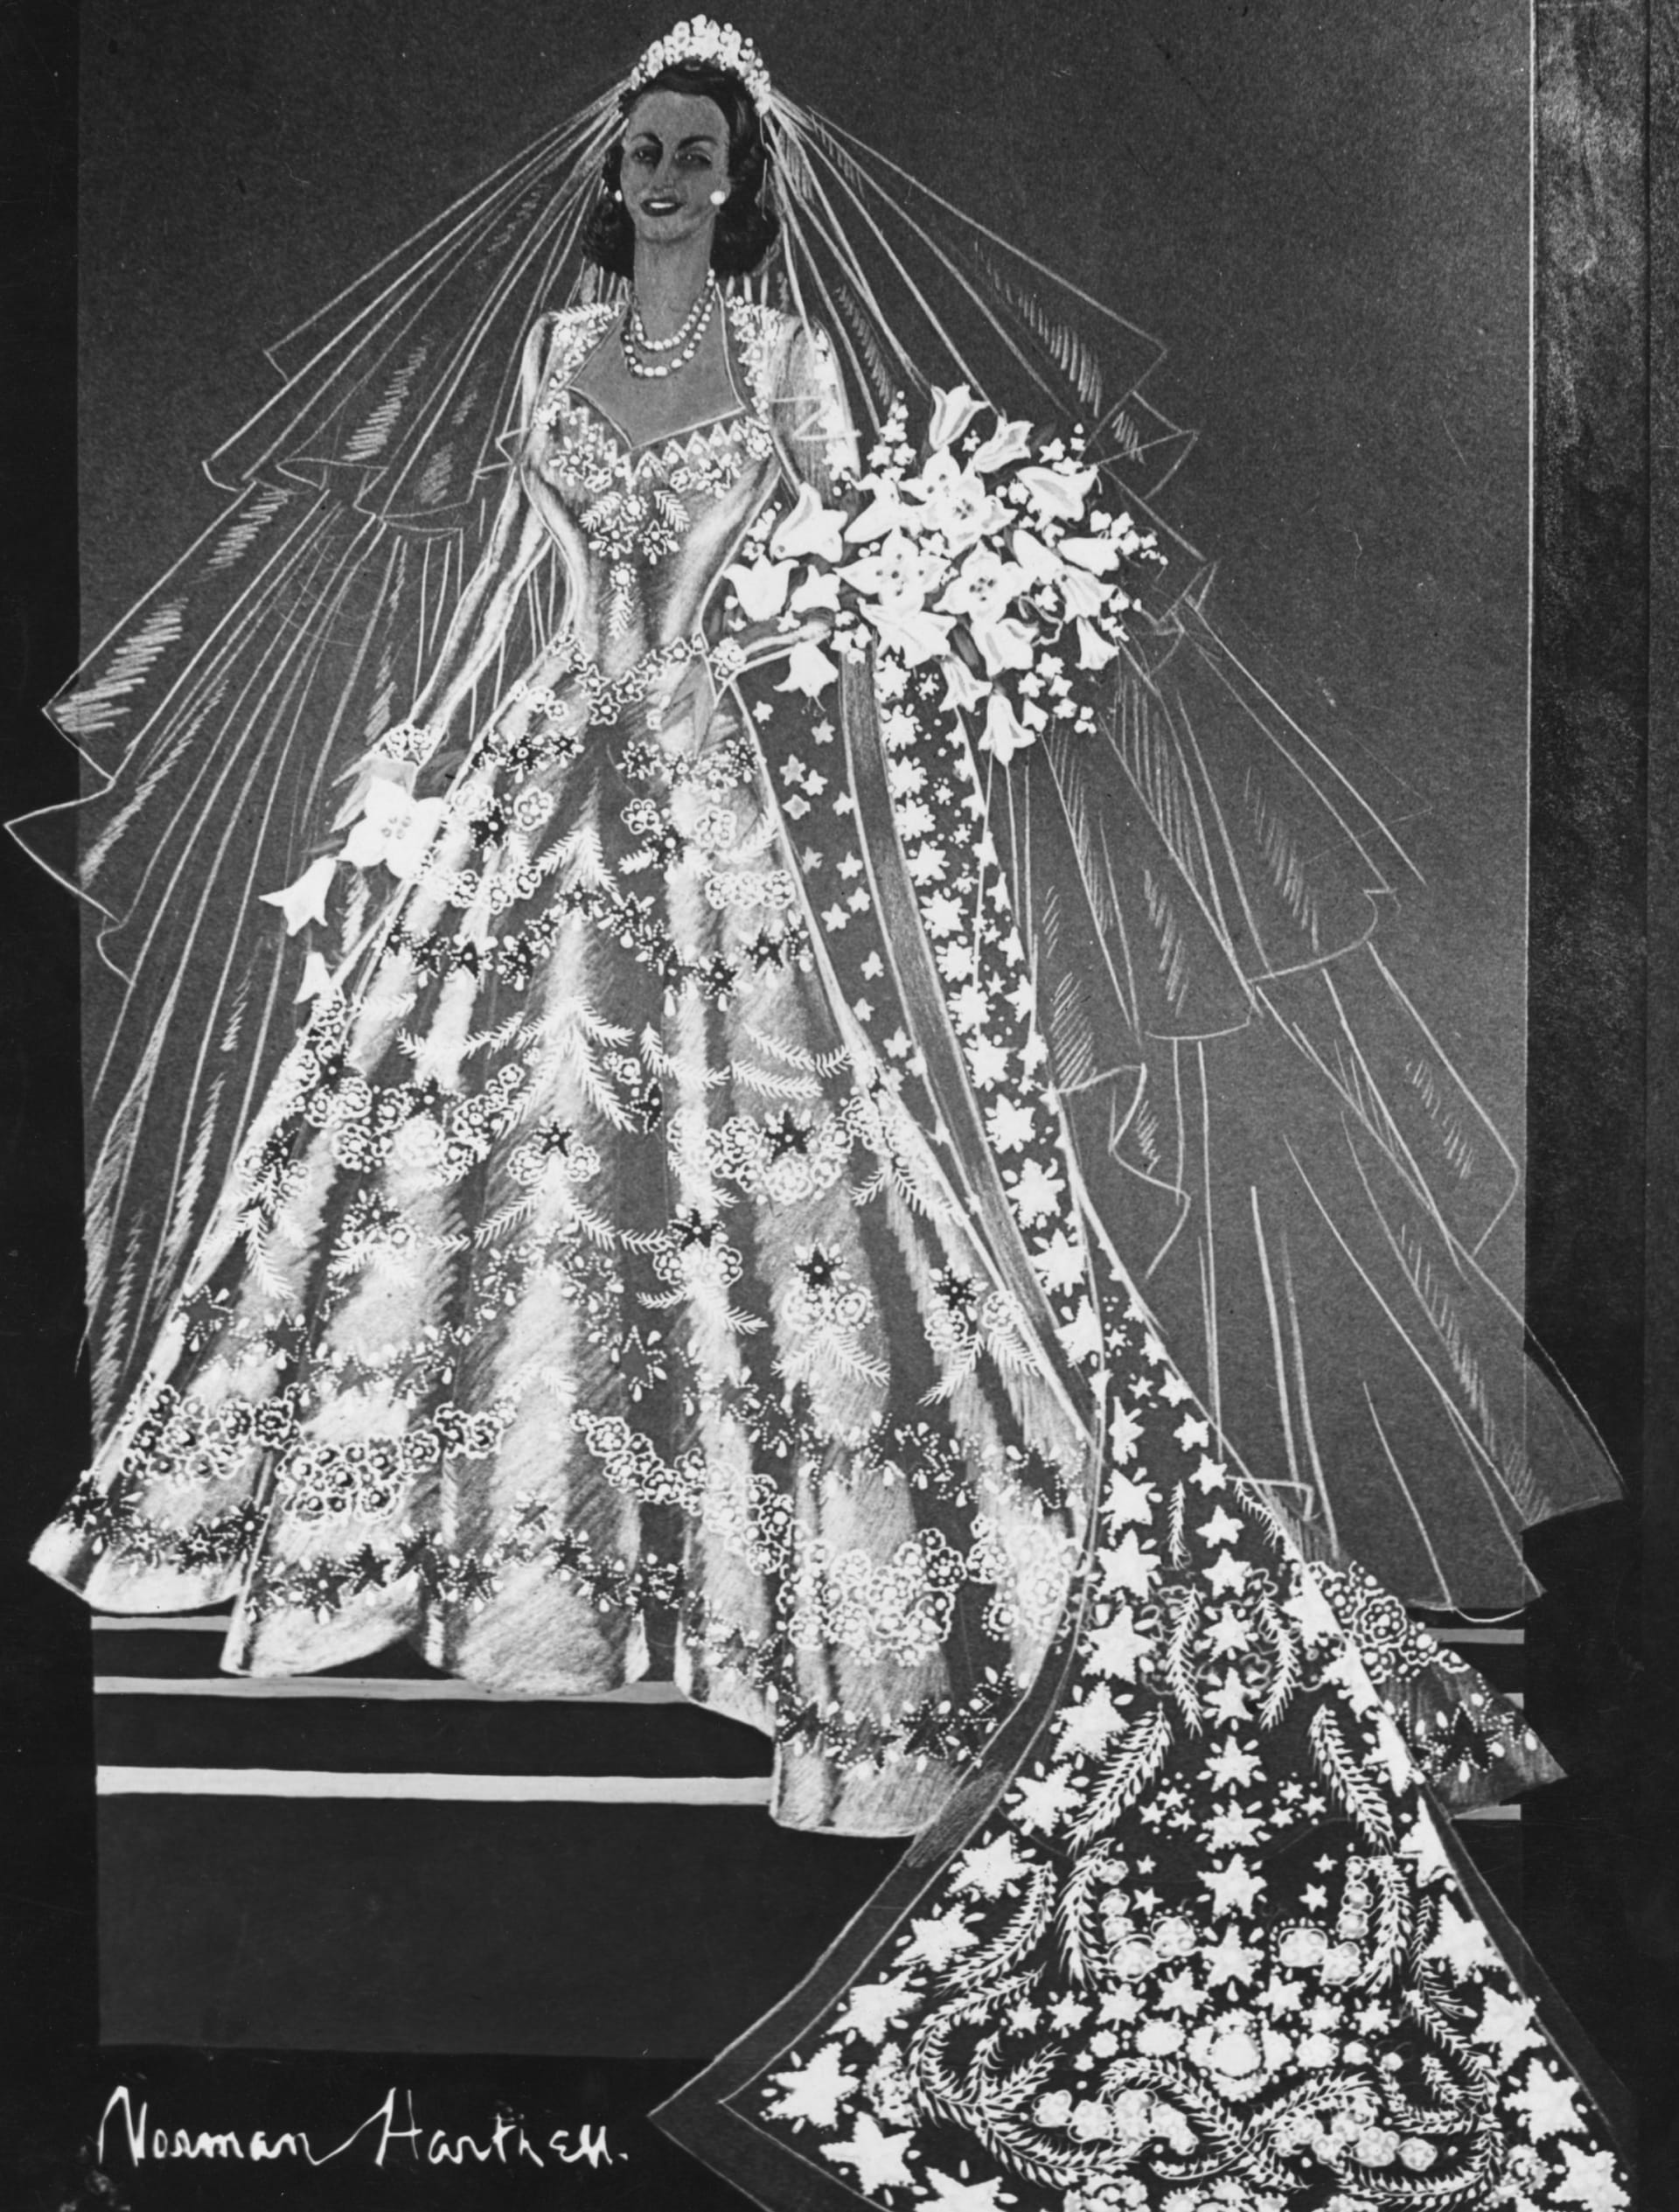 Skica svatebních šatů Alžběty II. od Normana Hartnella (1947)